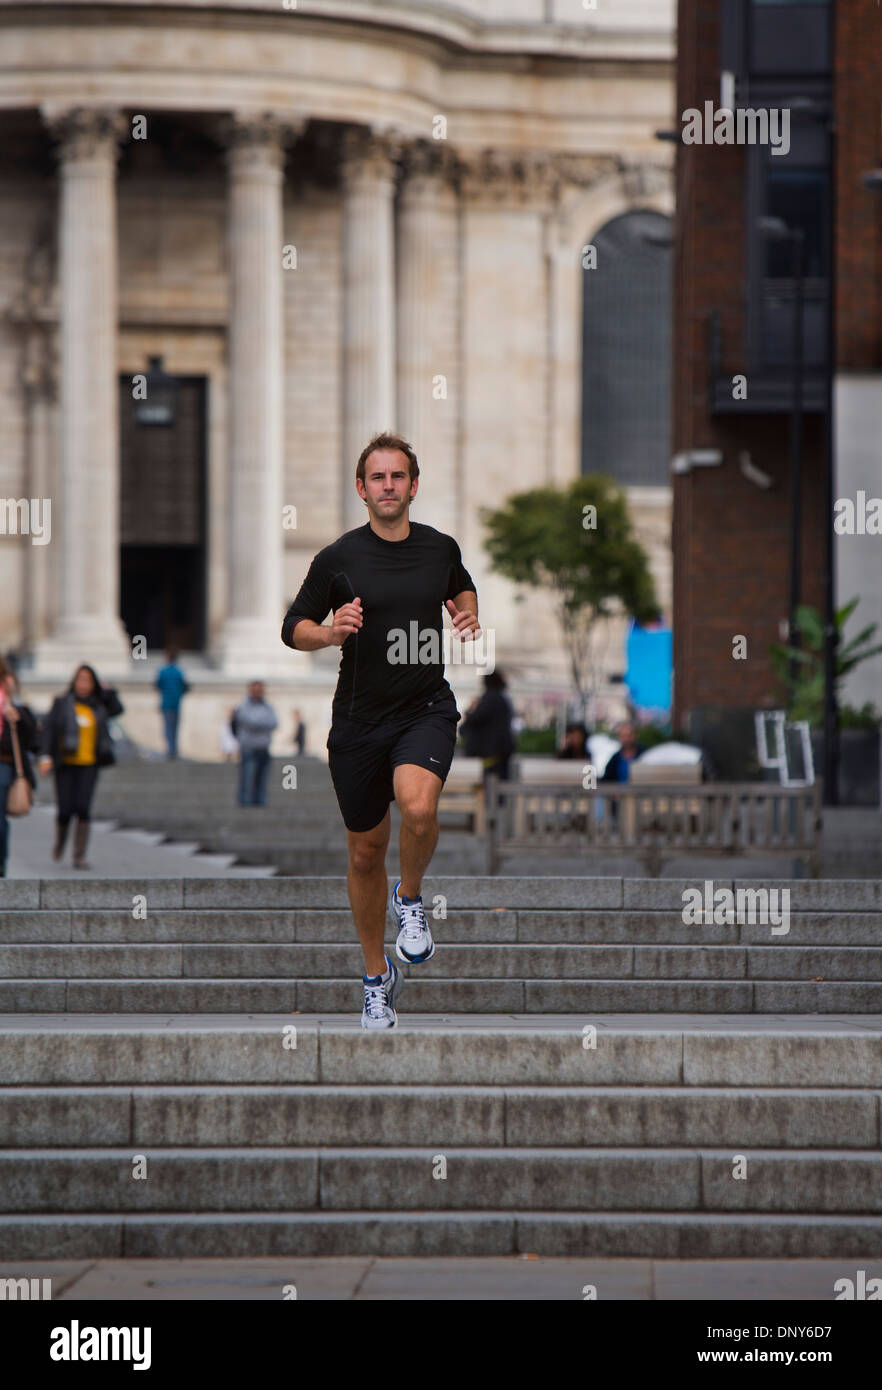 Gary Hicking, Personaltrainer in London, UK, halten fit durch Joggen durch die Stadt. Stockfoto